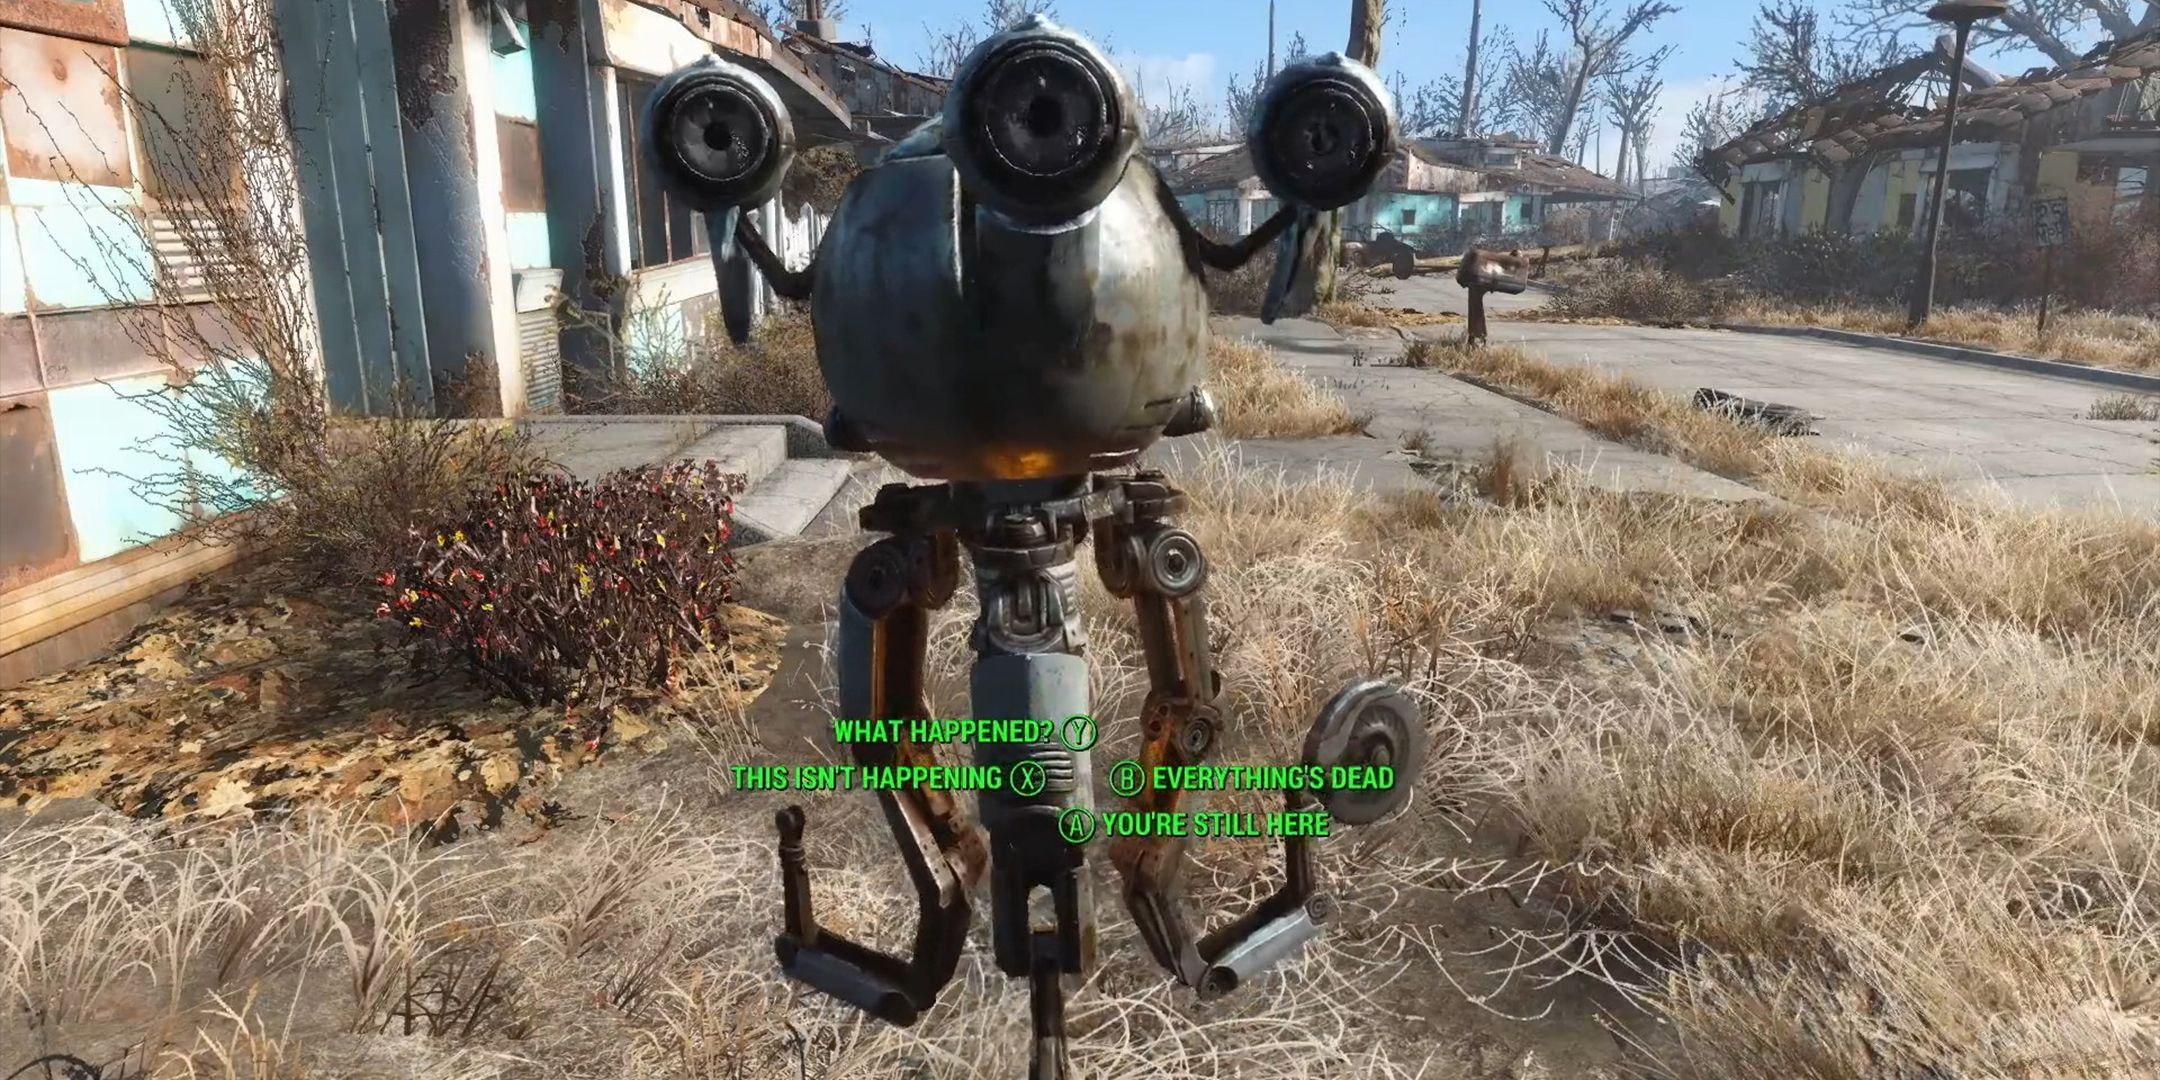 Roda de diálogo do Fallout 4 em uma conversa com o robô Codsworth.